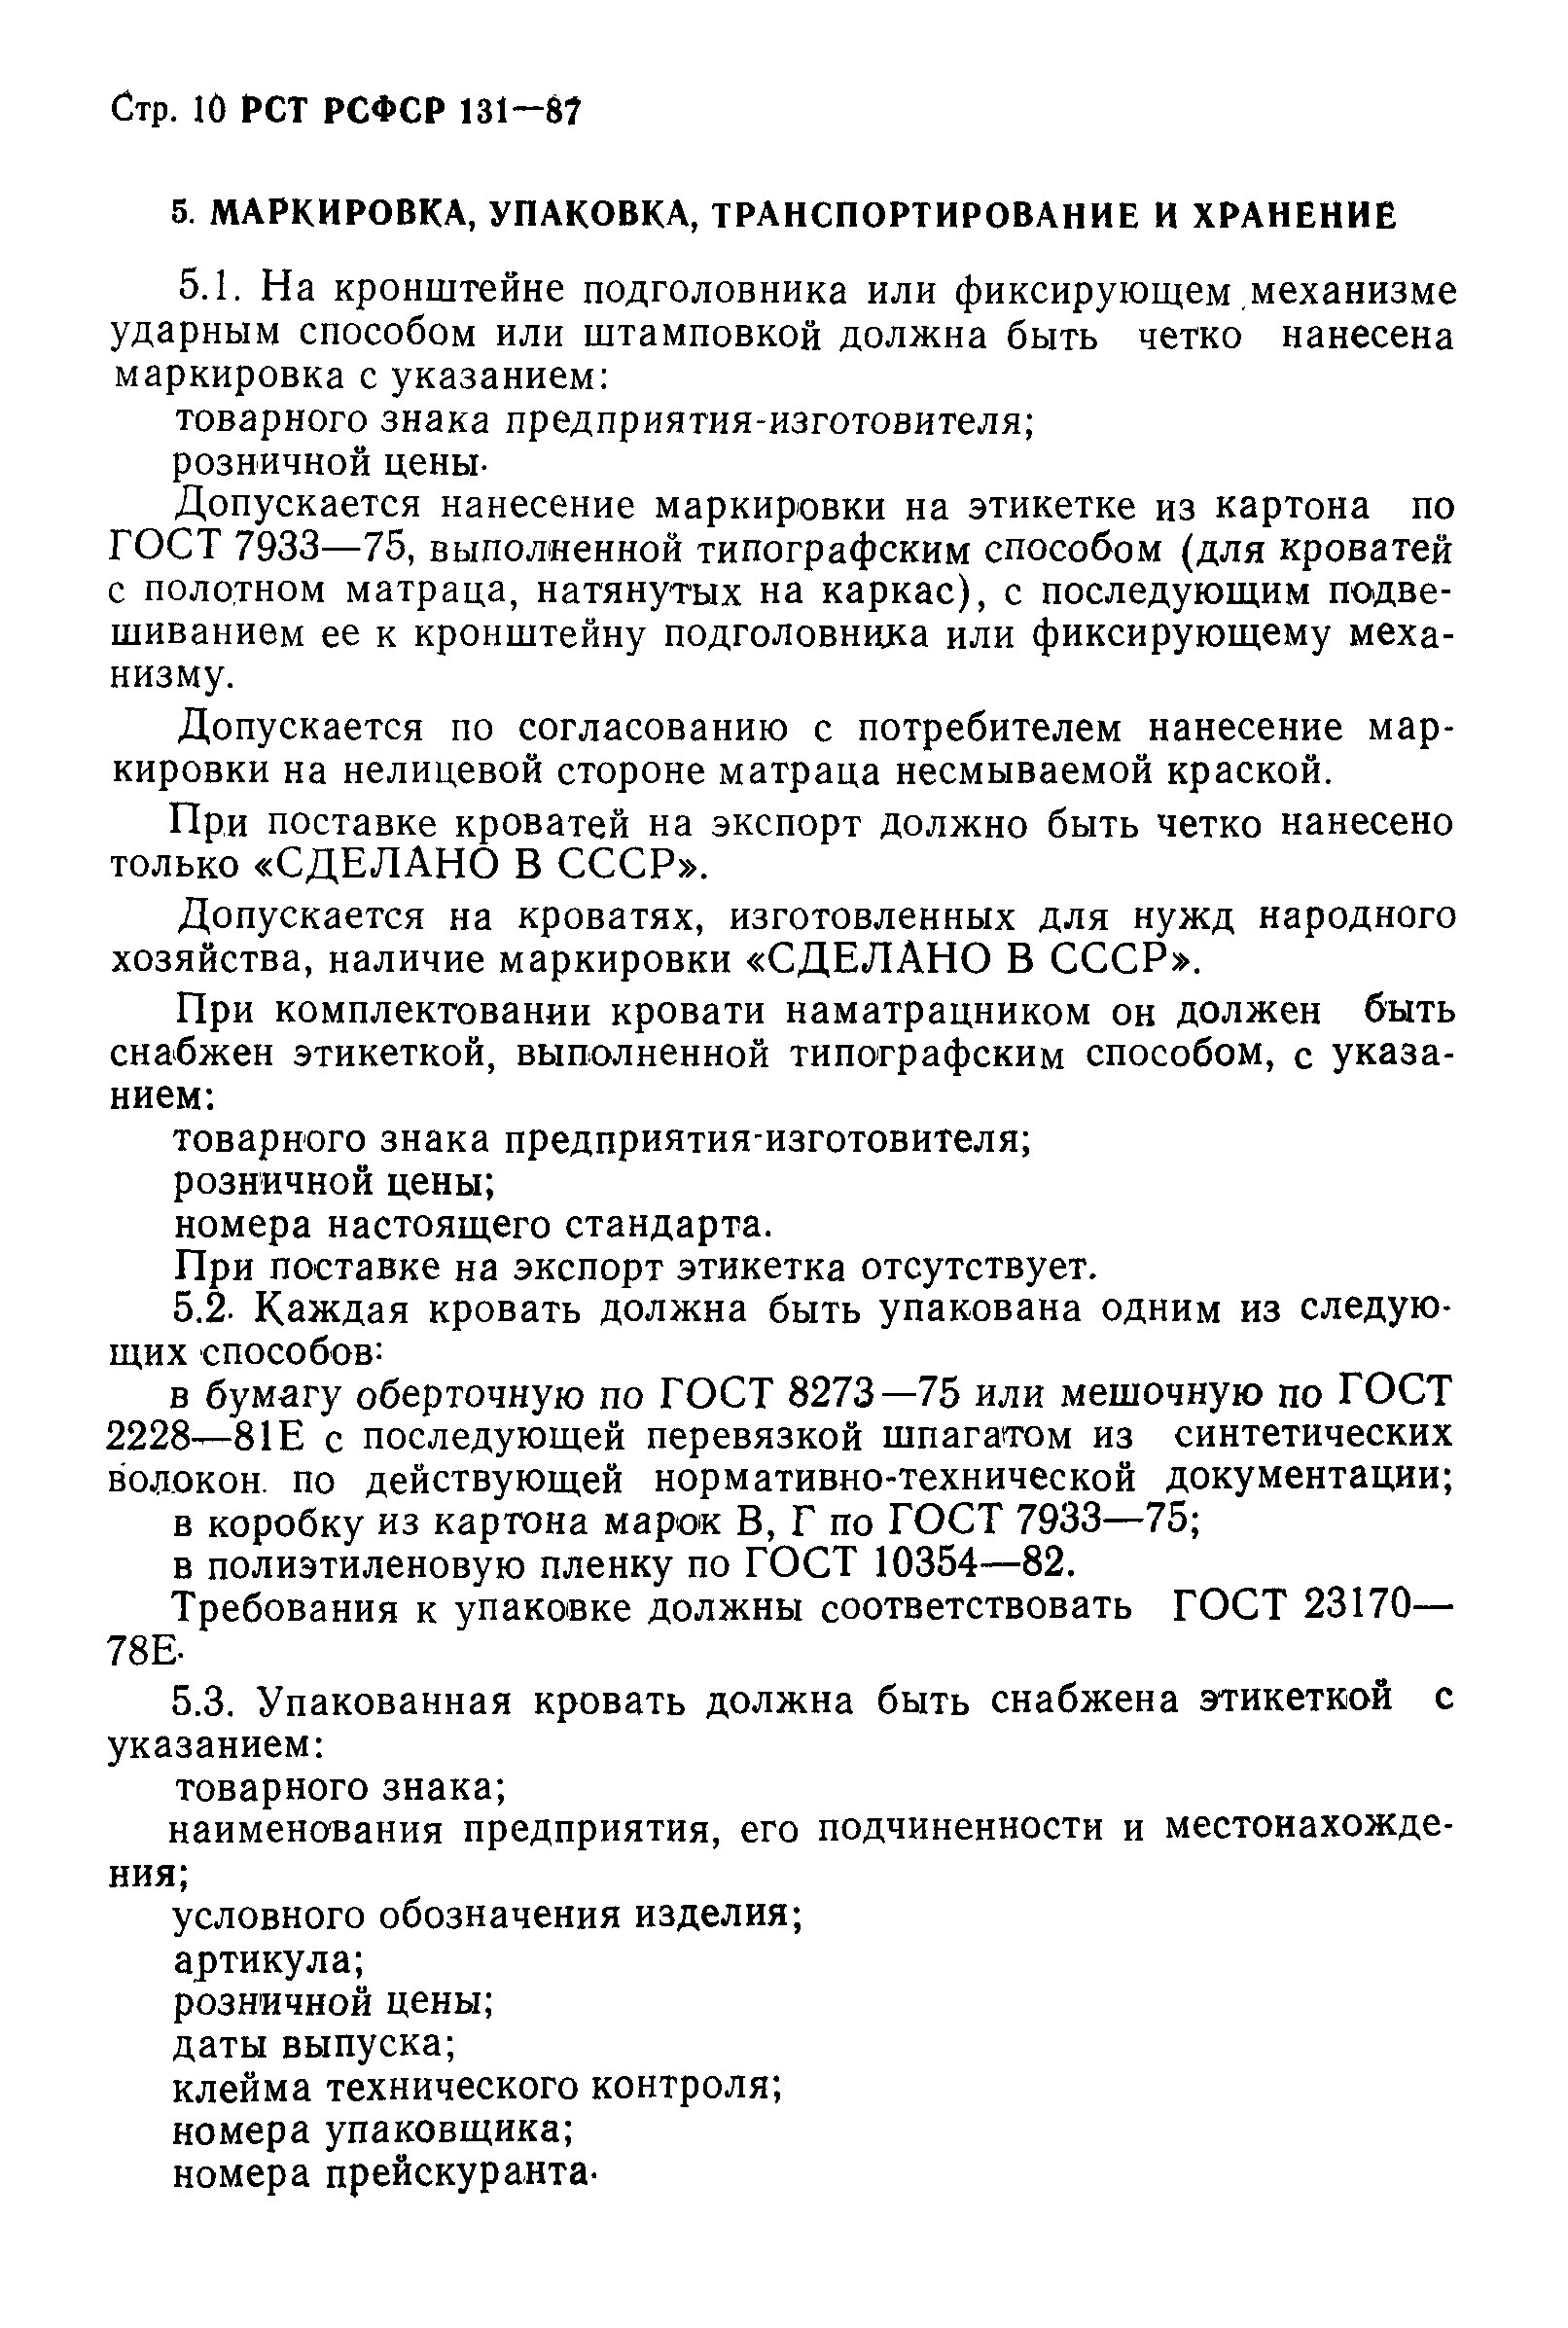 РСТ РСФСР 131-87